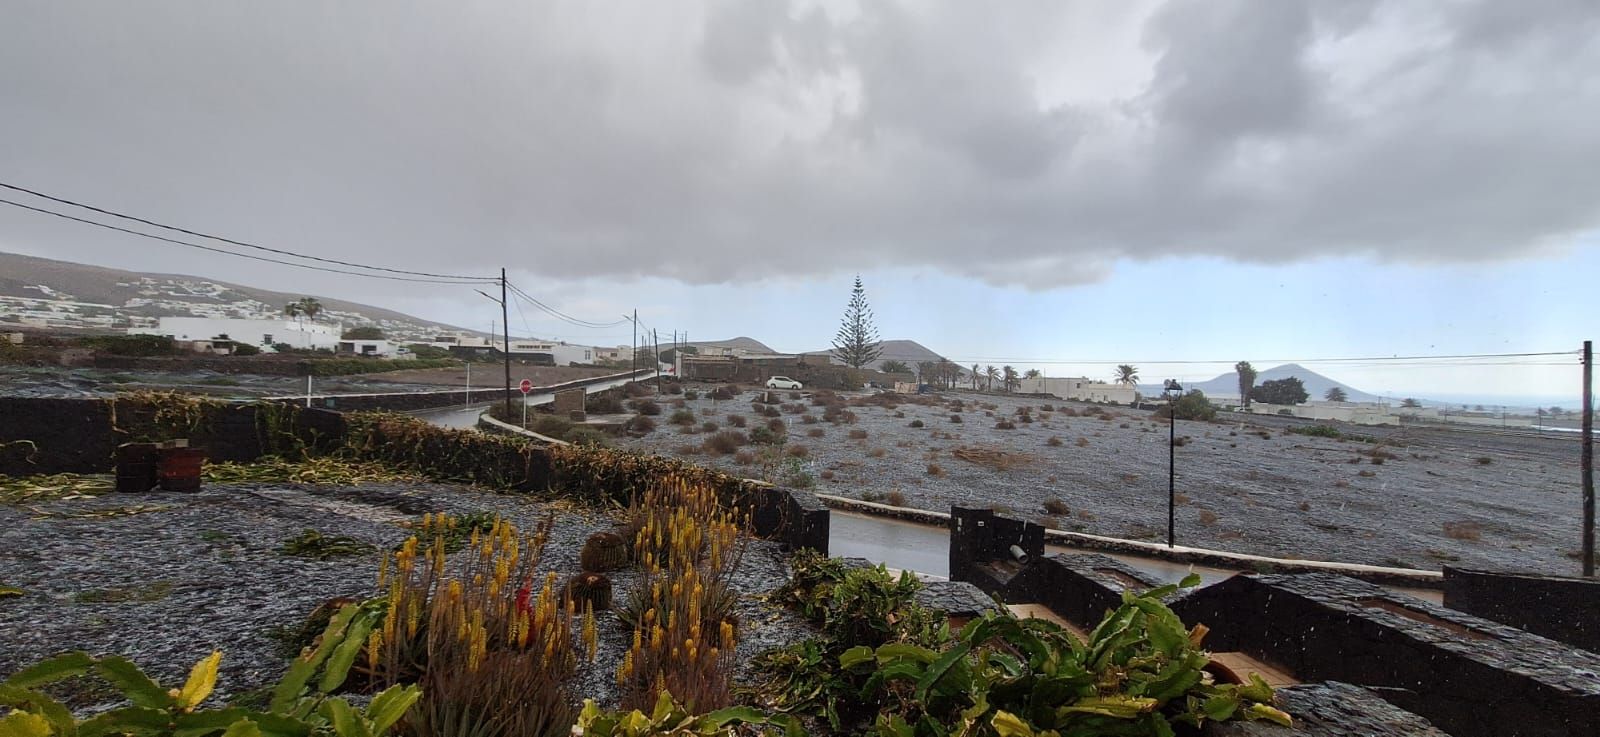 Granizo en Lanzarote y zonas anegadas por la lluvia